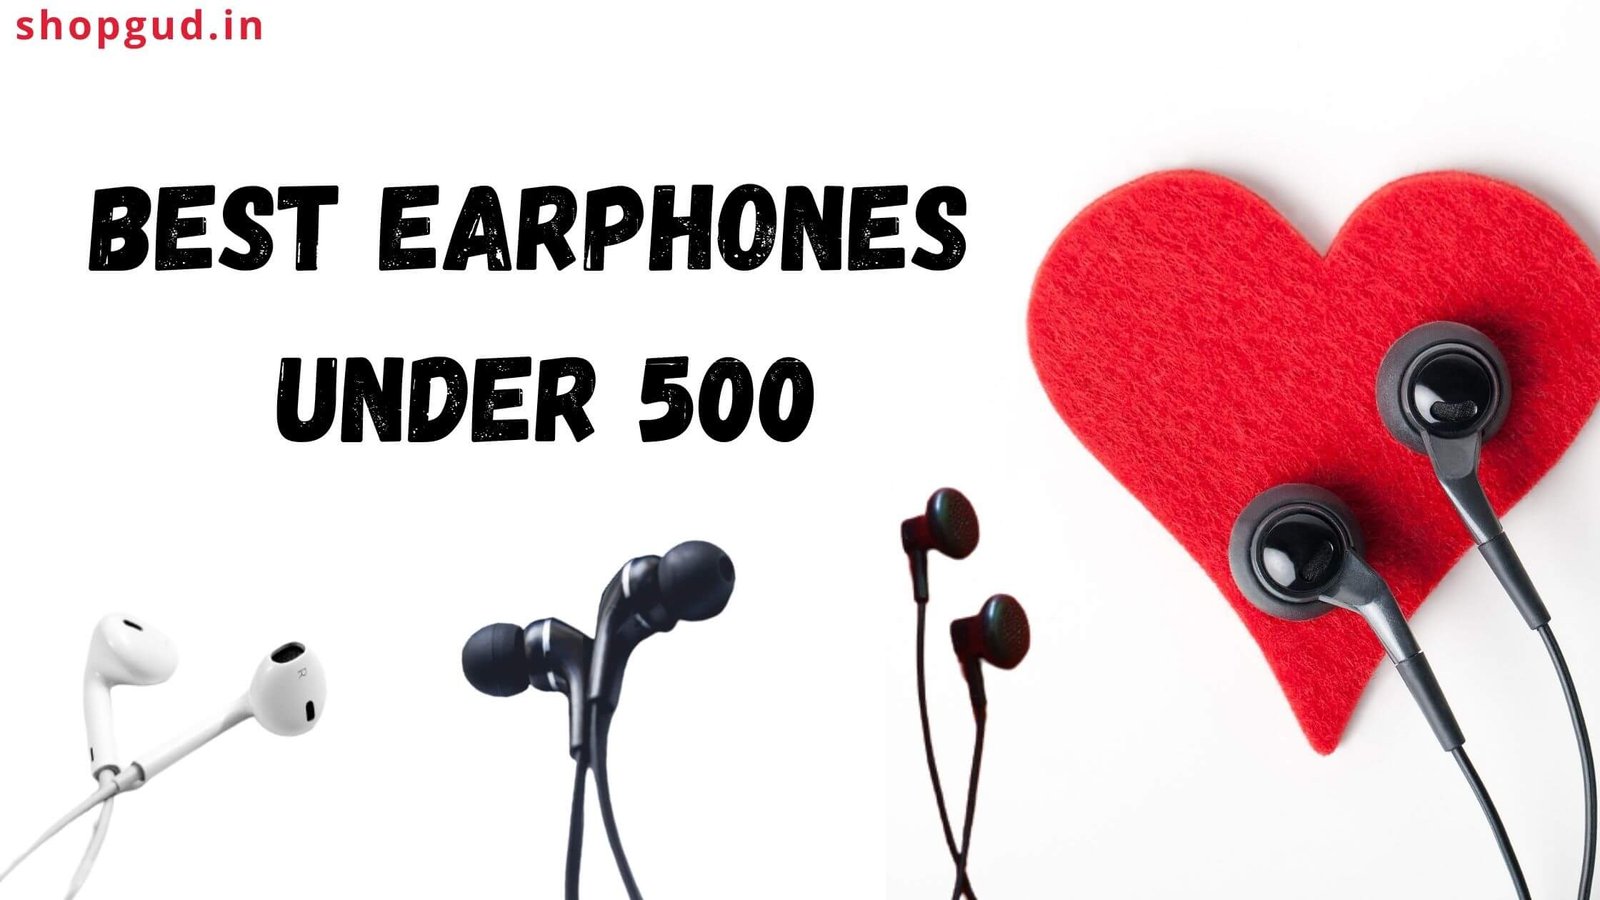 Best earphones under 500